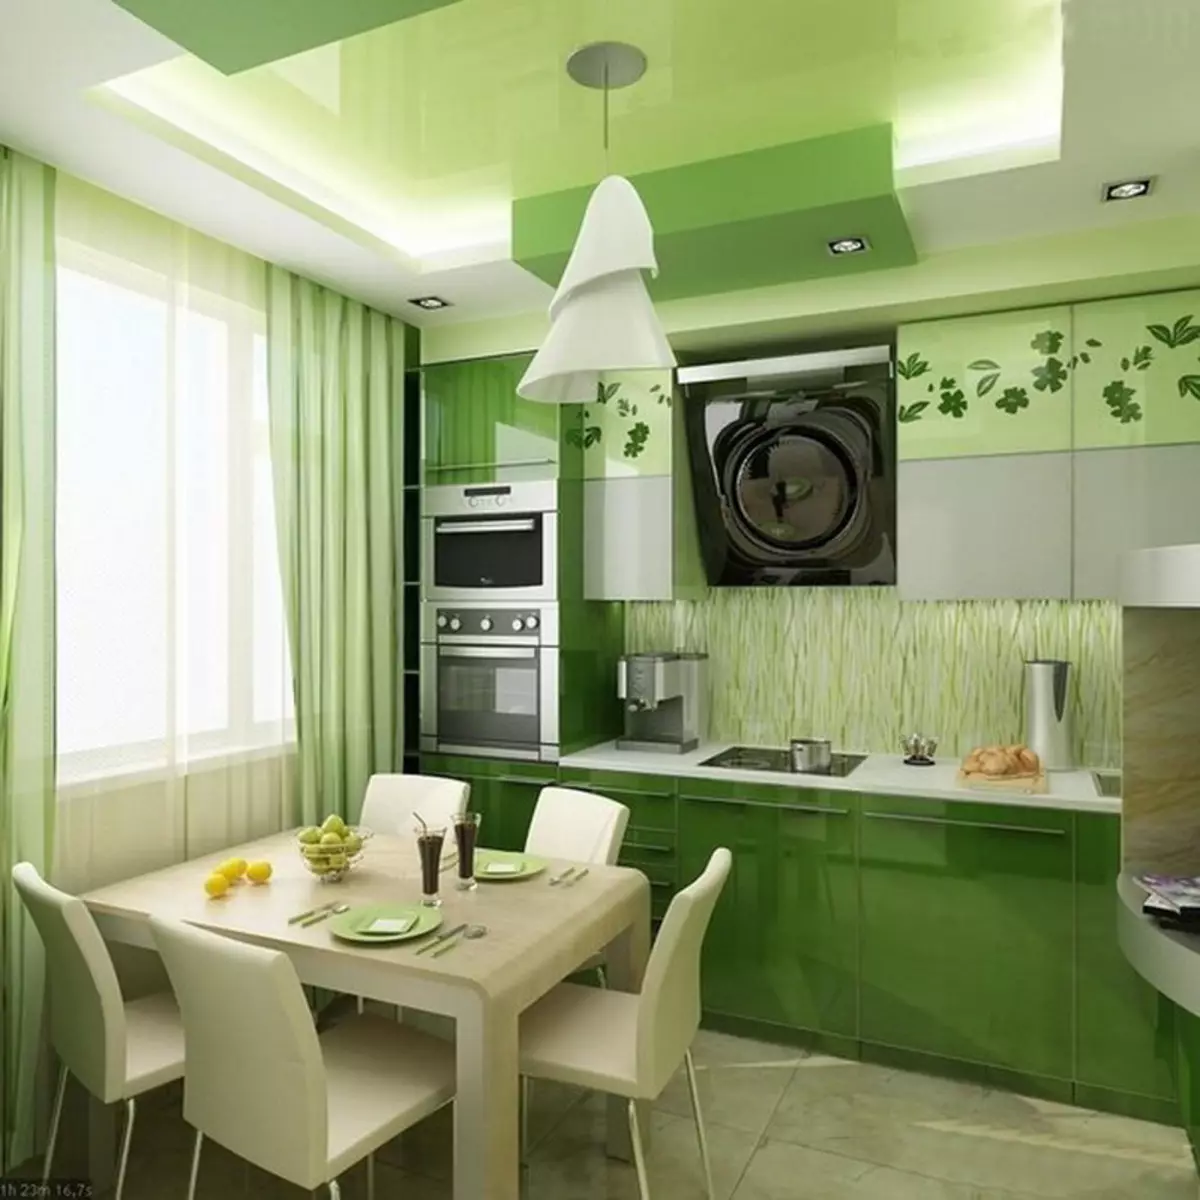 Grönt kök (111 bilder): Grönt köksheadset i inredning, grönt tapetval, grågrön och mörkgrön, svart och grönt och grönt brunt kök 9554_10